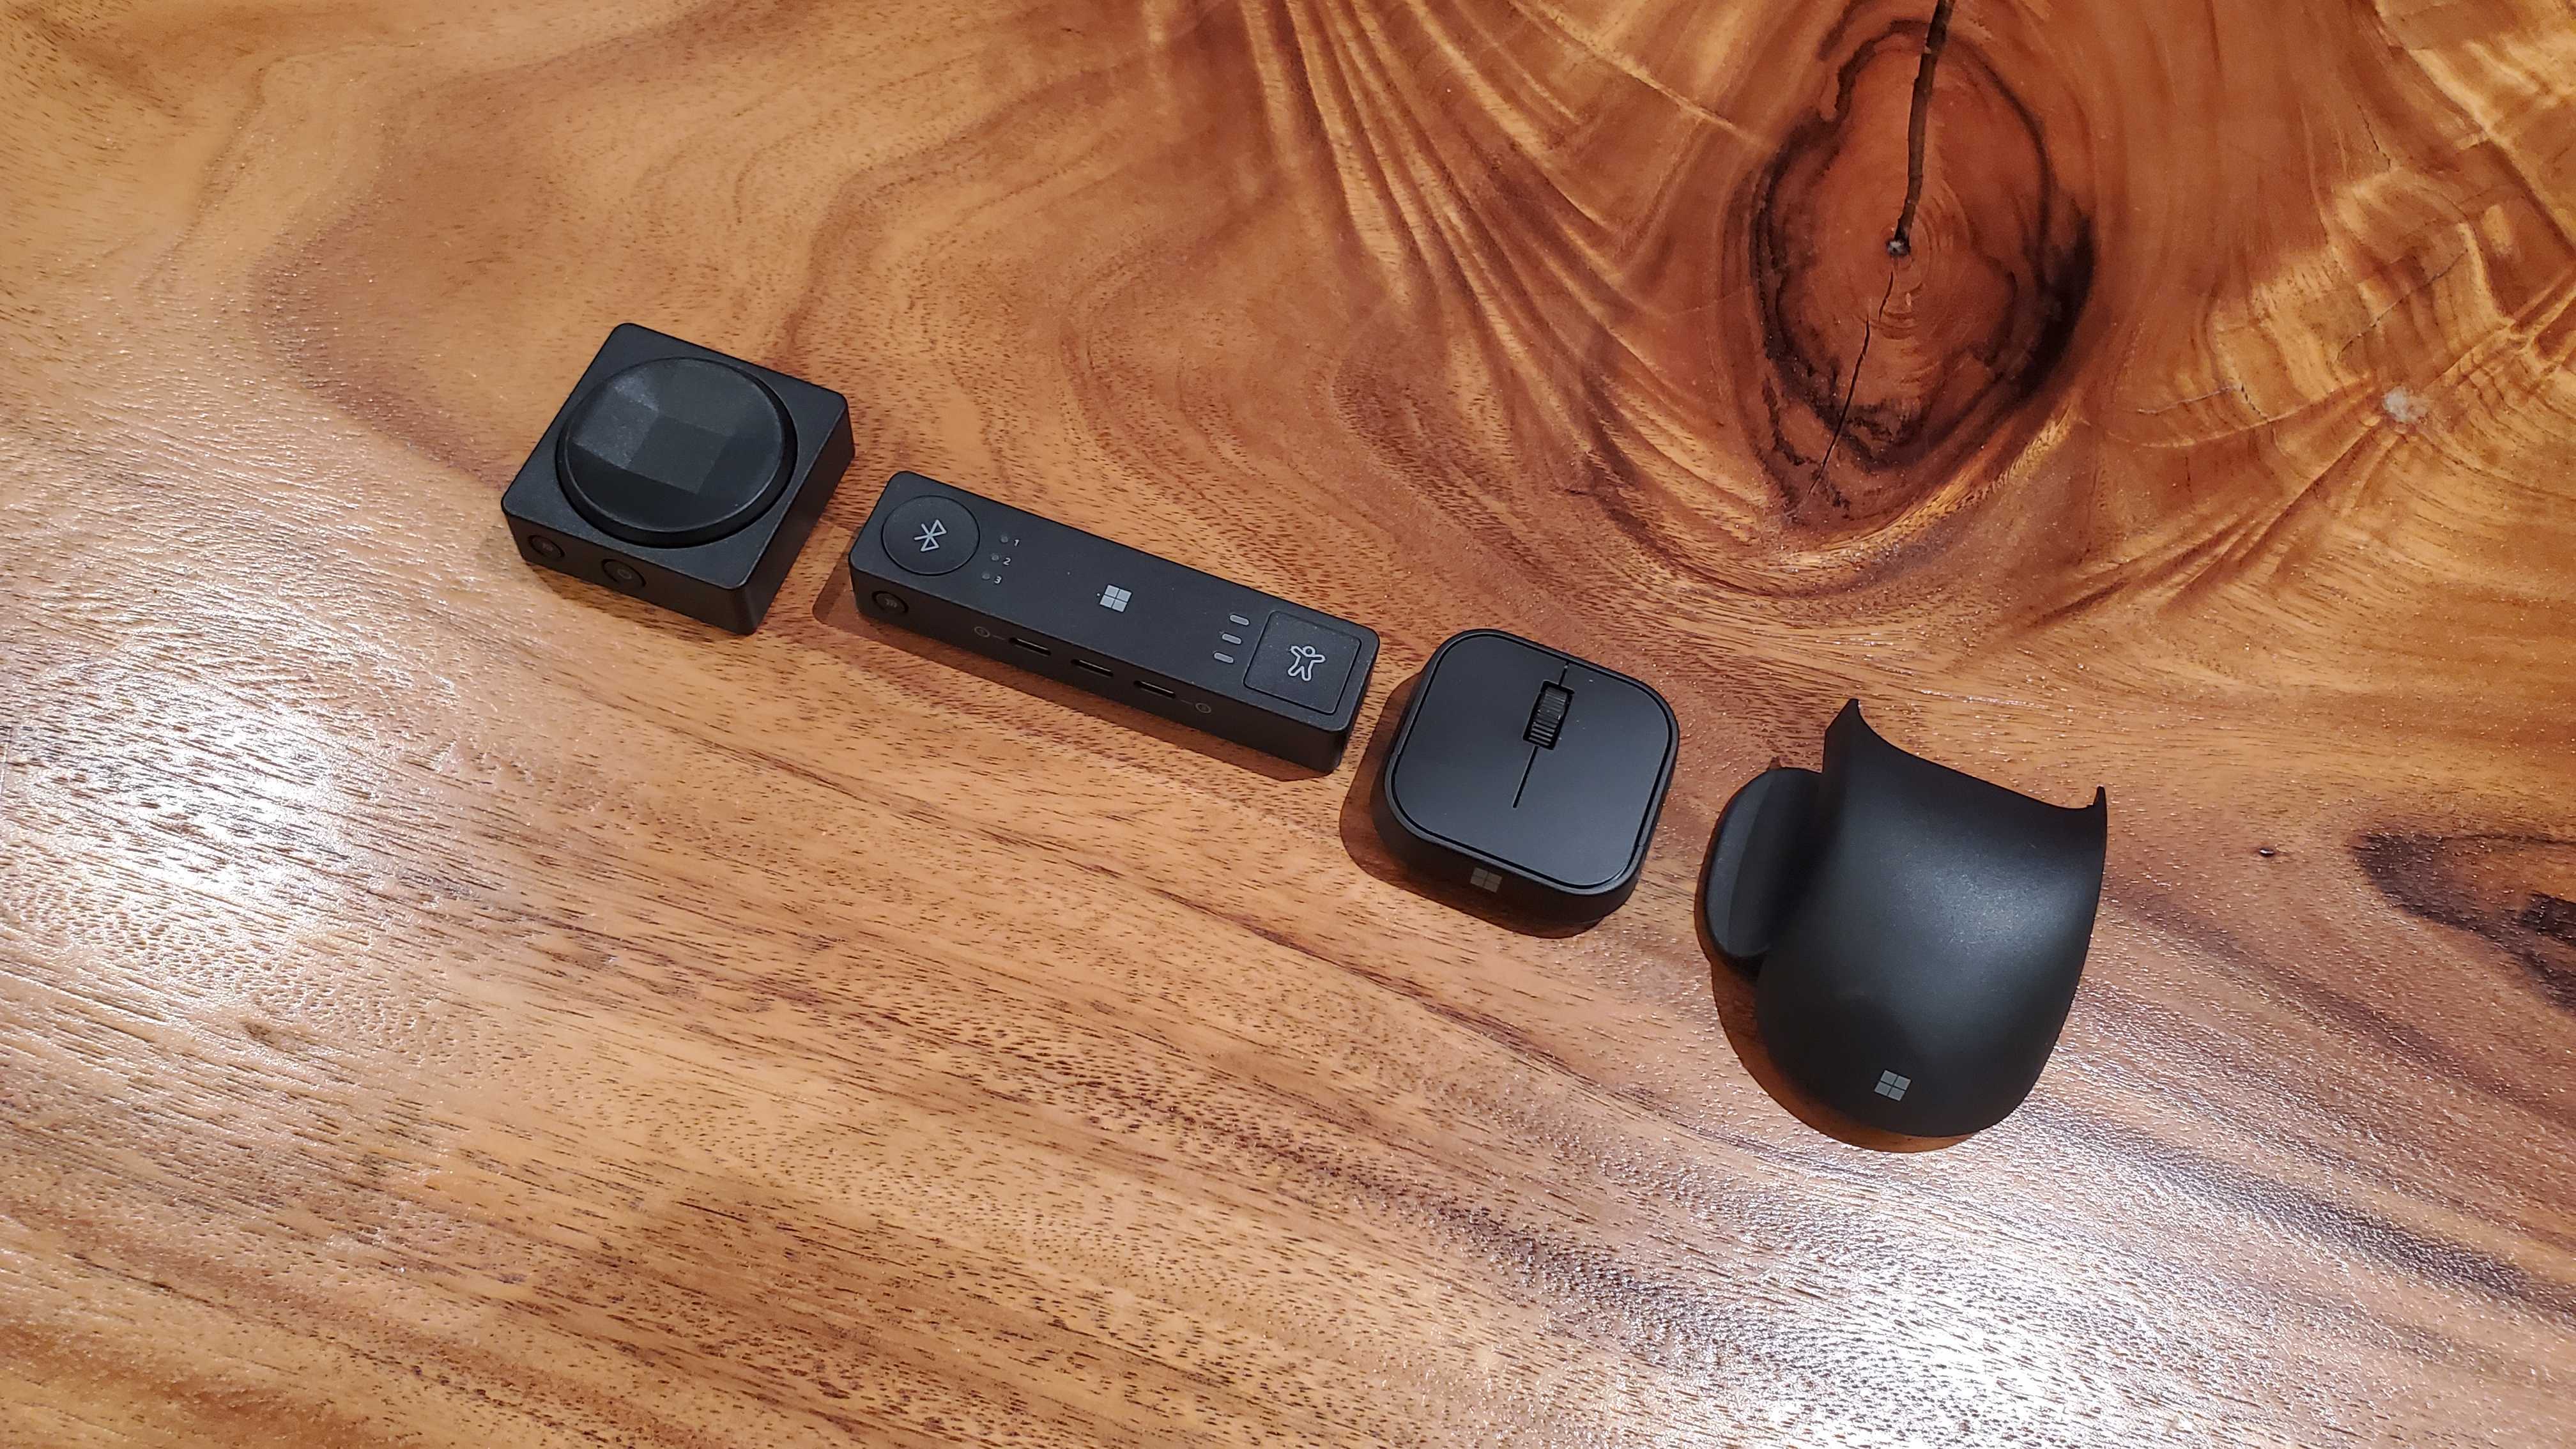 O D-pad, o hub, o mouse e a cauda/polegar do mouse ficam no conjunto de acessórios adaptativos da Microsoft